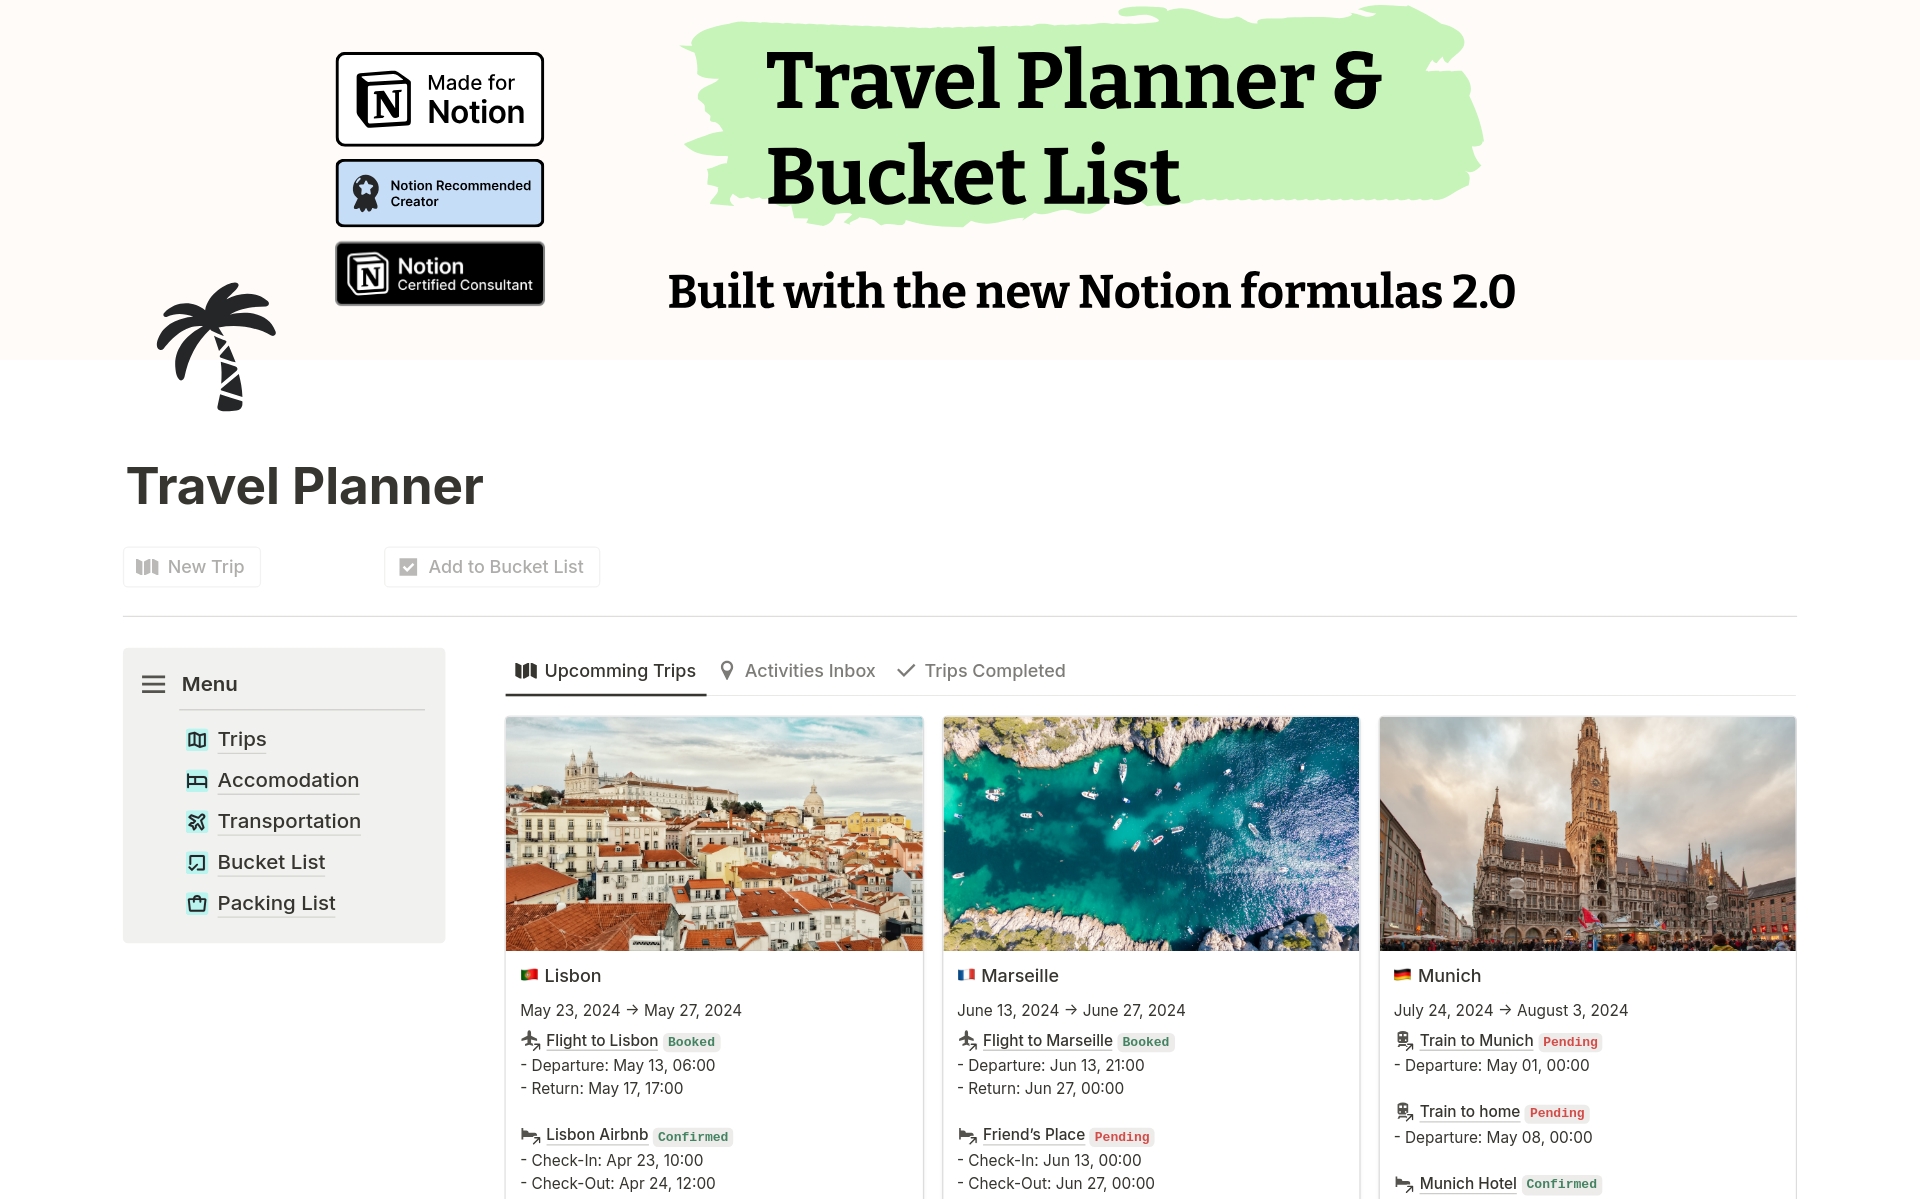 Uma prévia do modelo para Travel Planner & Bucket List